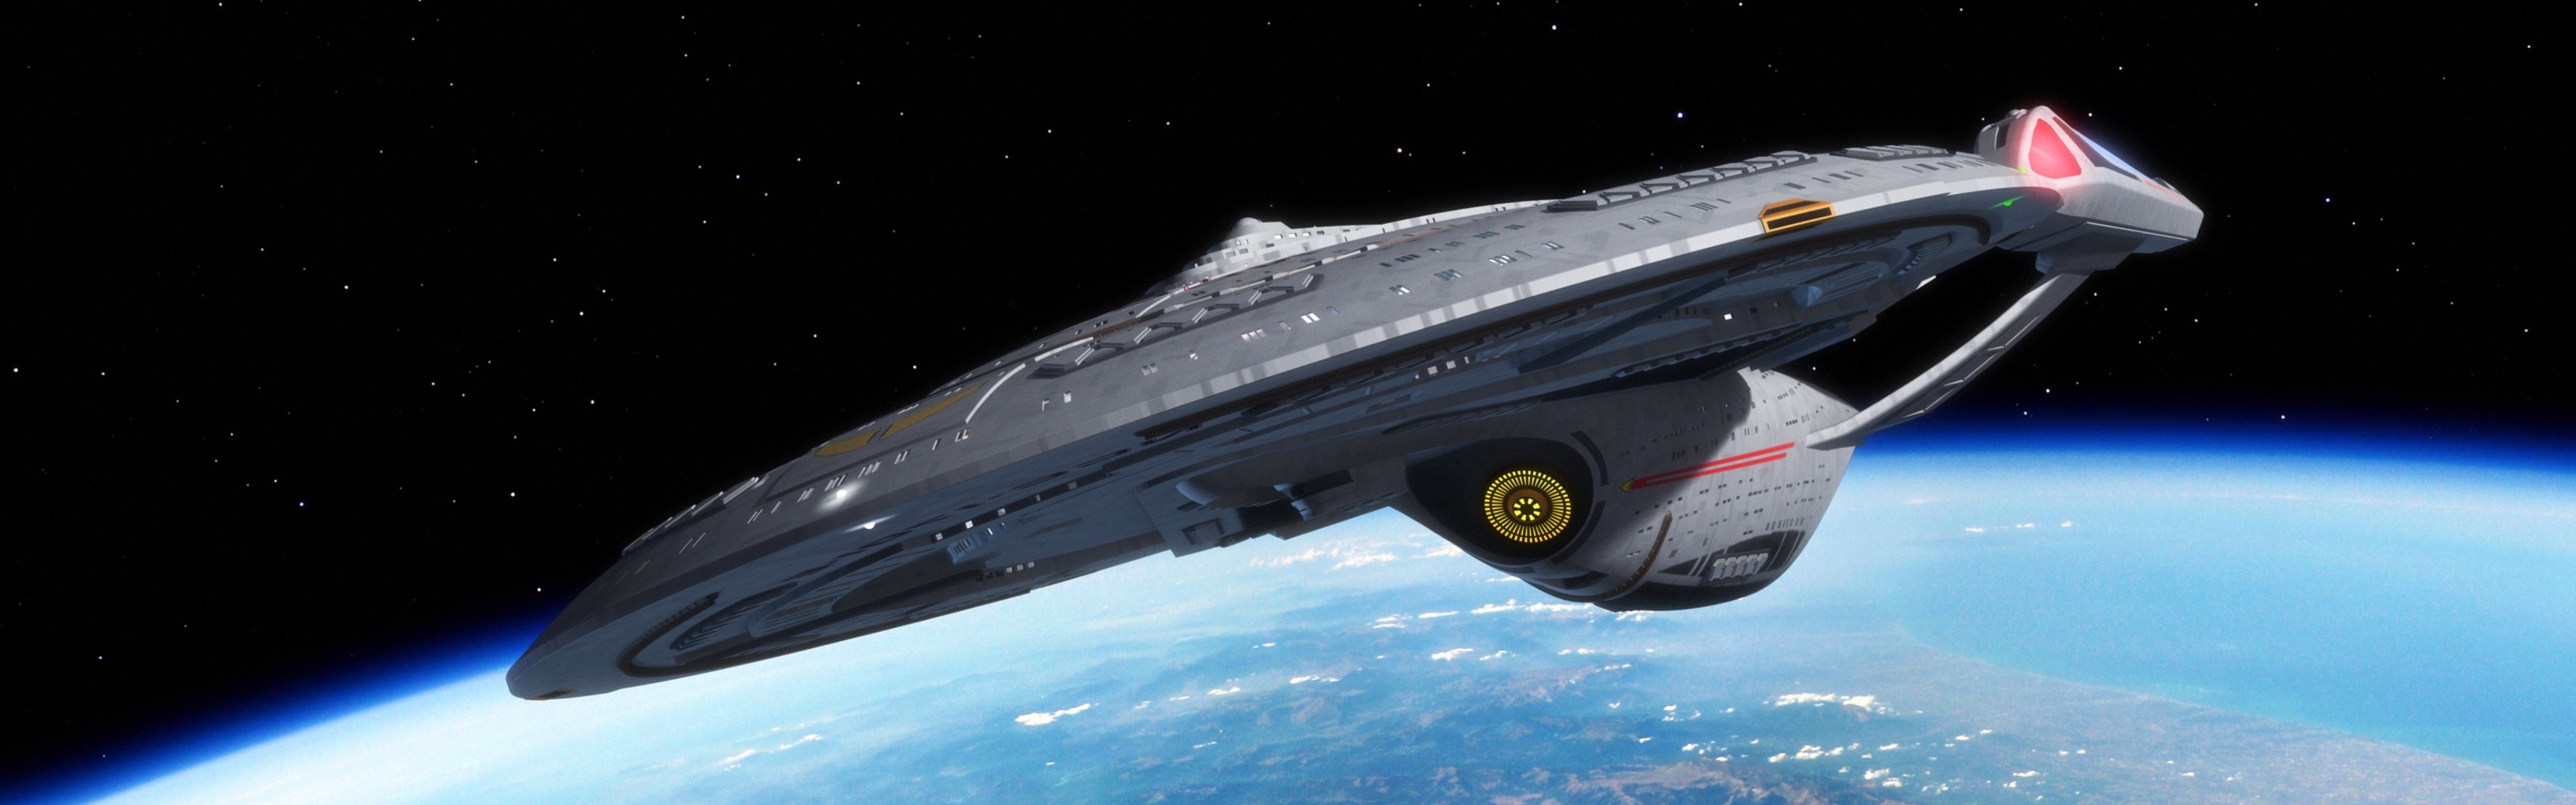 Star Trek, USS Enterprise (spaceship), Space, Multiple Display Wallpaper